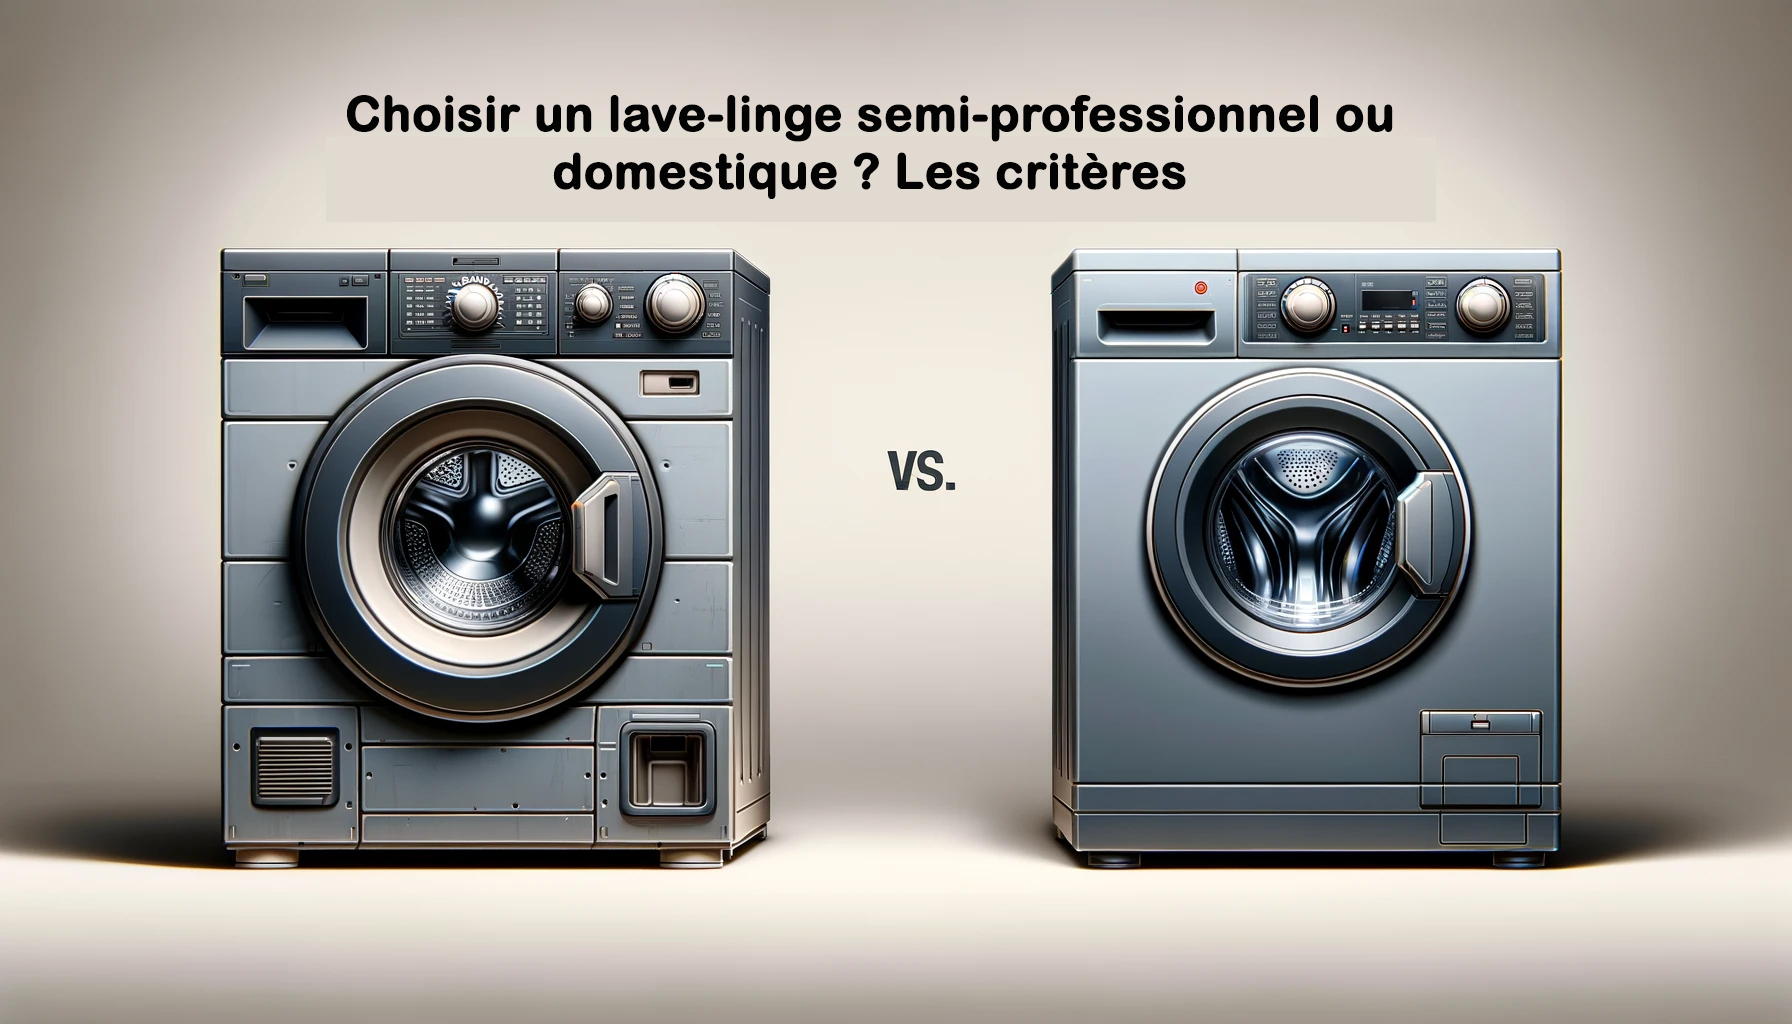 Choisir un lave-linge semi-professionnel ou domestique